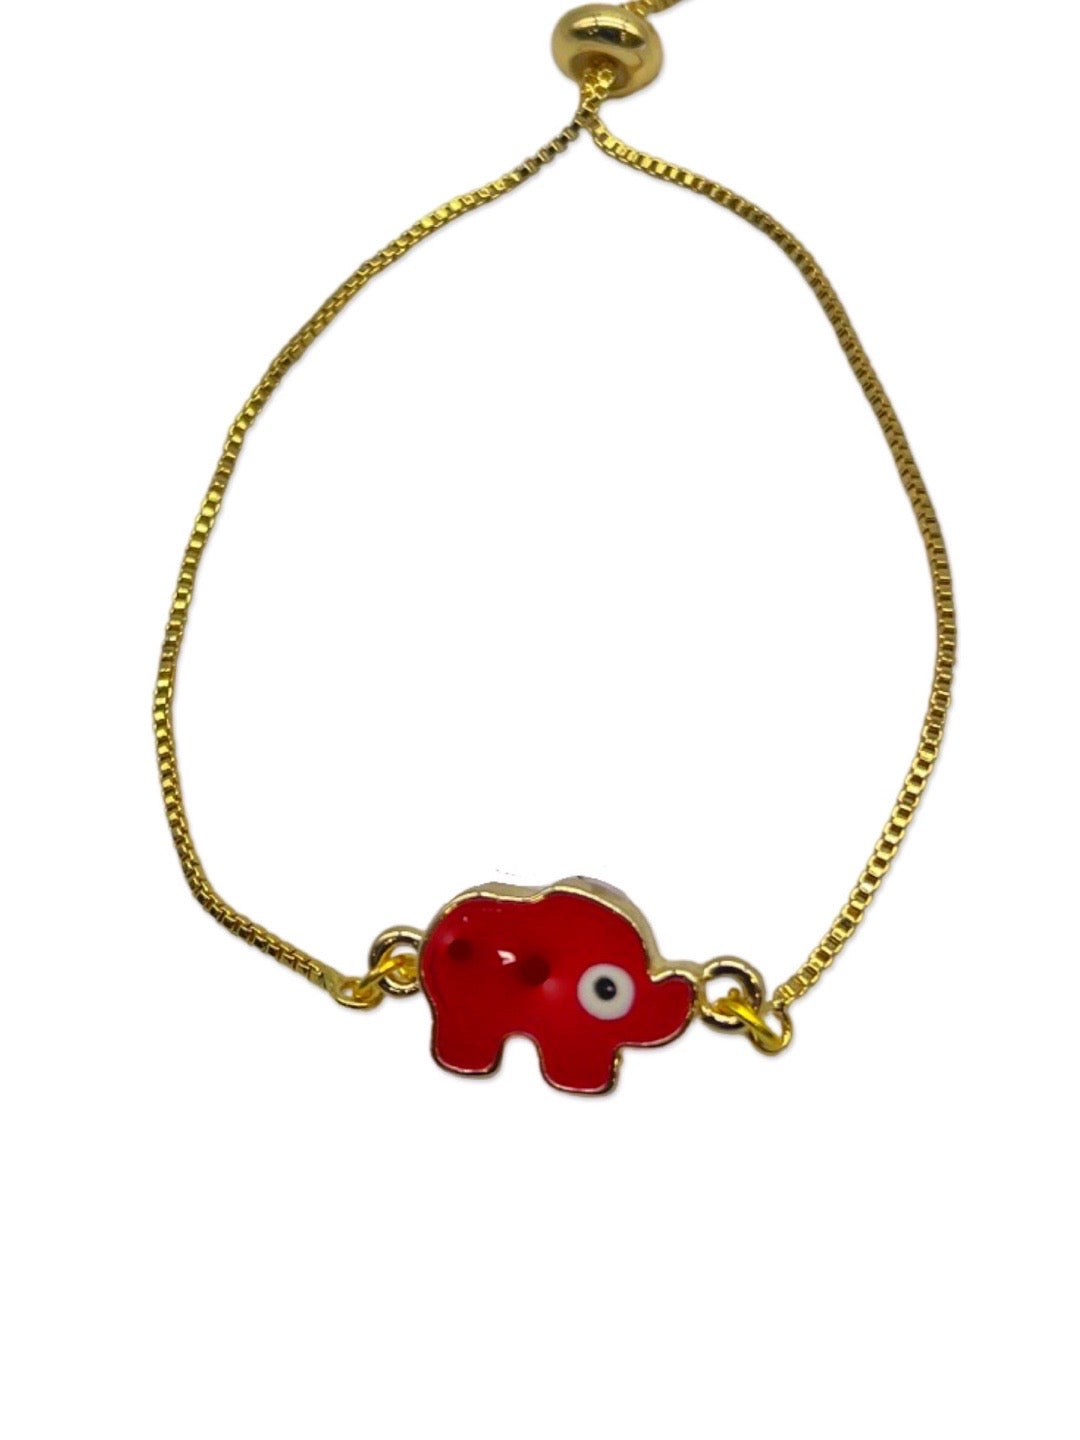 Buy Good Luck Gift for Her Elephant Bangle Bracelet Aqua Online in India   Etsy